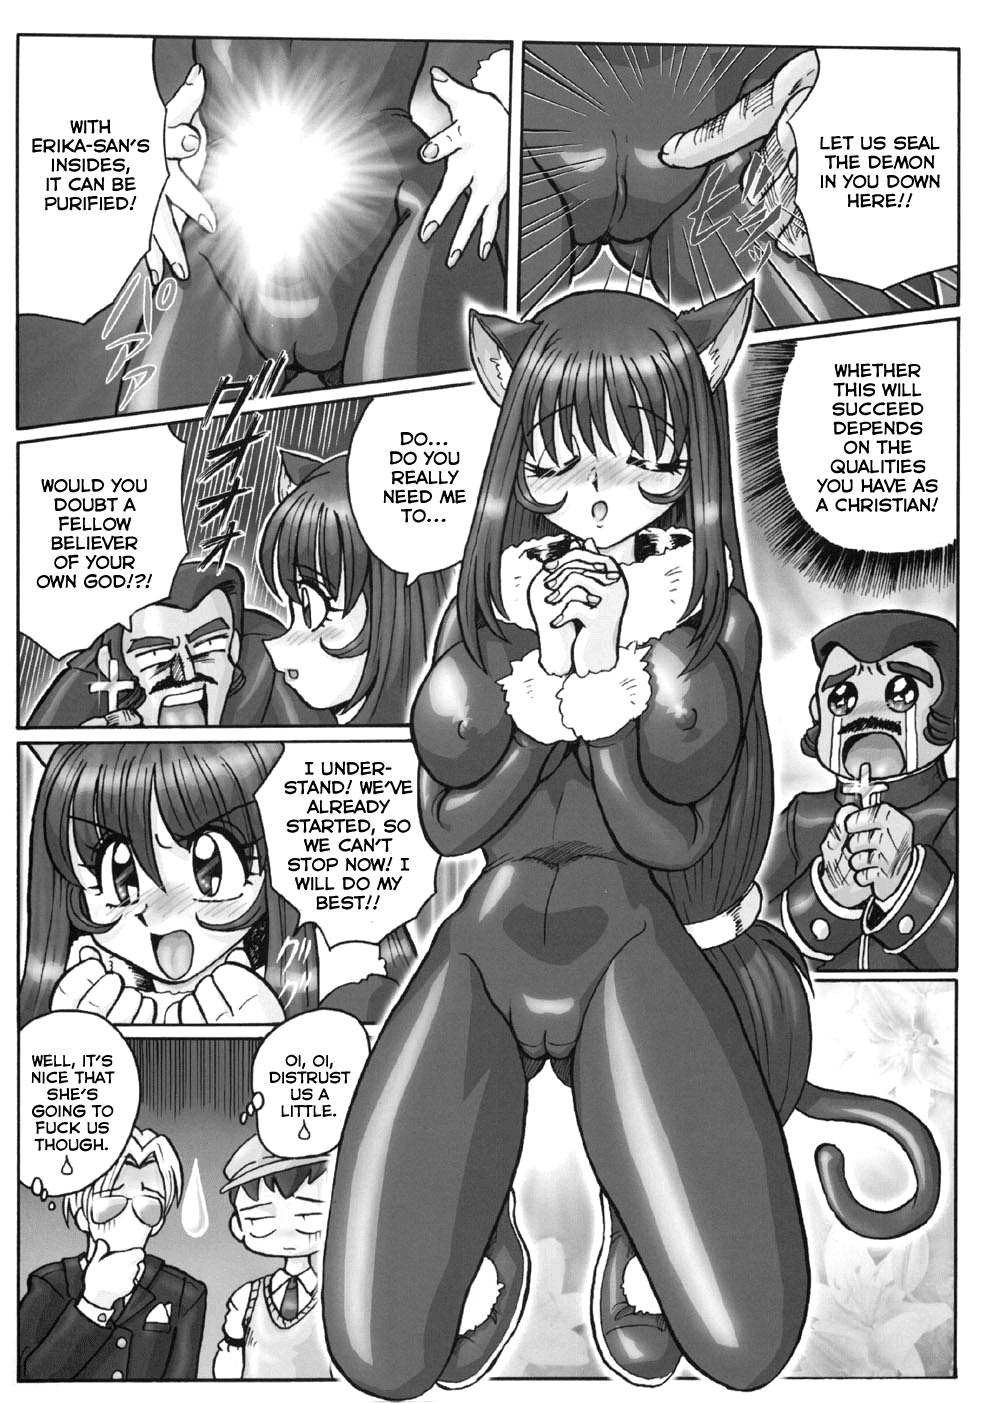  Fujishima Spirits 3 Ch. 1 - Sakura taisen Latino - Page 9